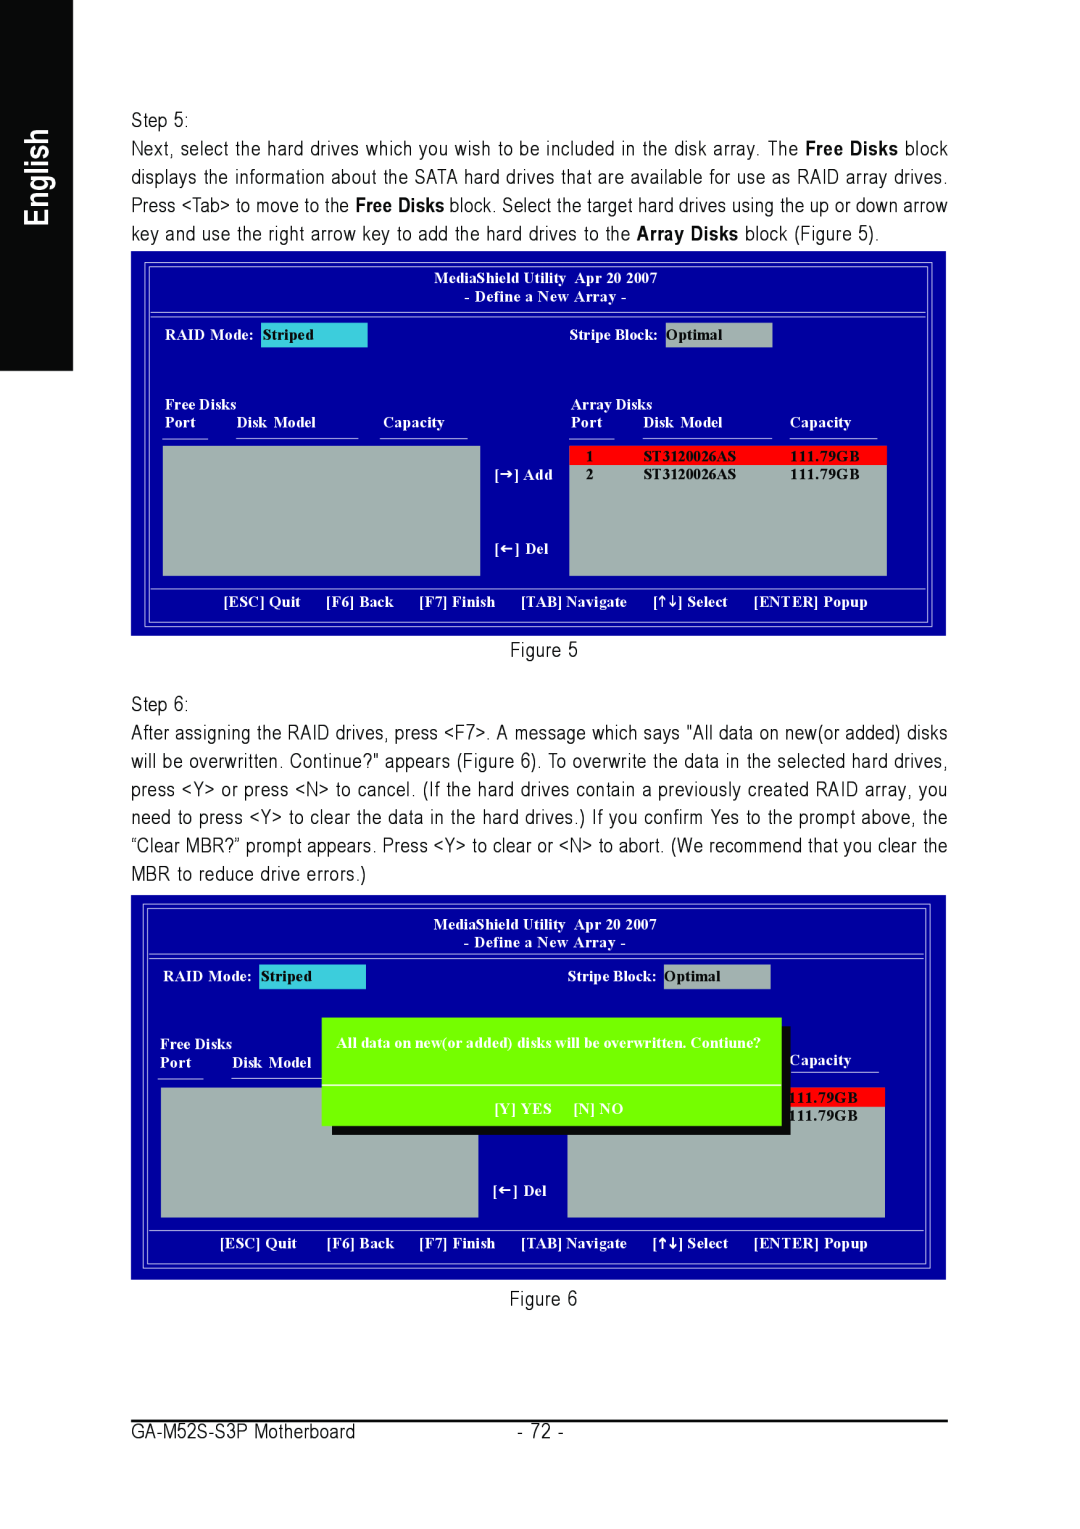 Gigabyte GA-M52S-S3P user manual English, All data on newor added disks willArraybe overwrittenDisks 